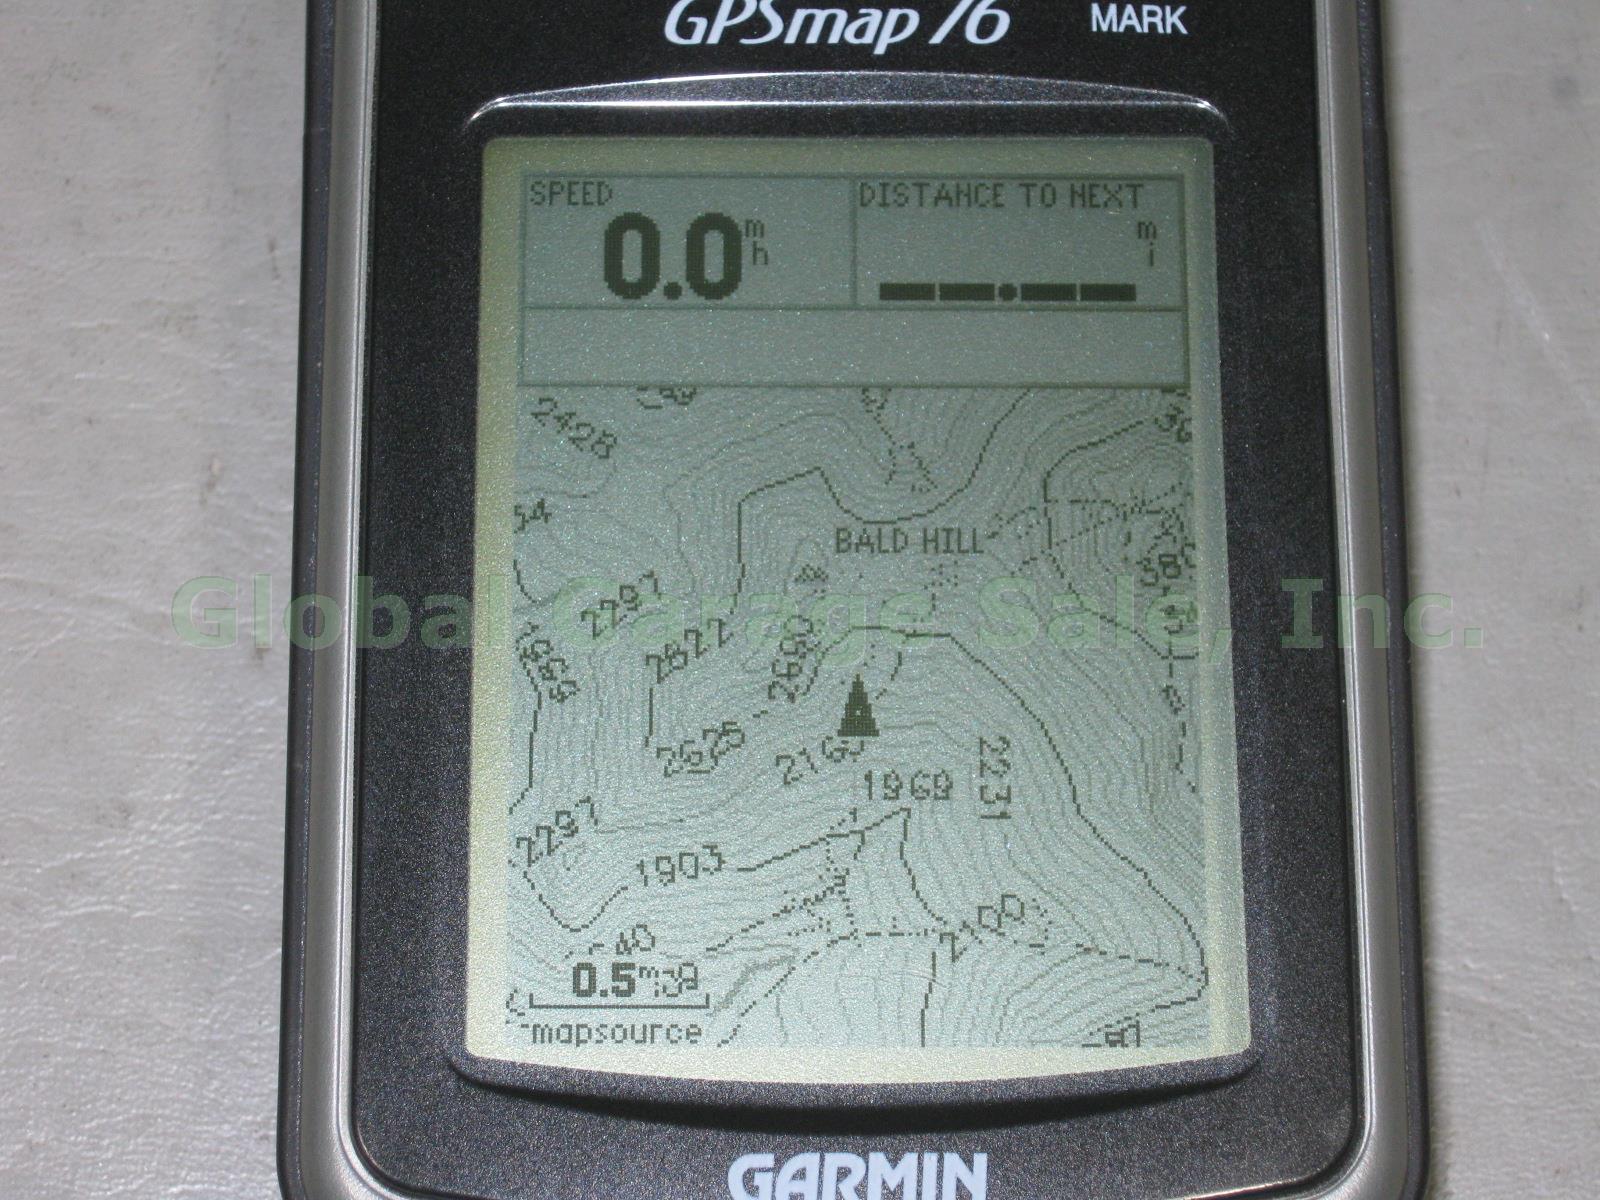 Garmin GPSmap 76 Portable Handheld GPS Satellite Navigator Marine Receiver Unit 2